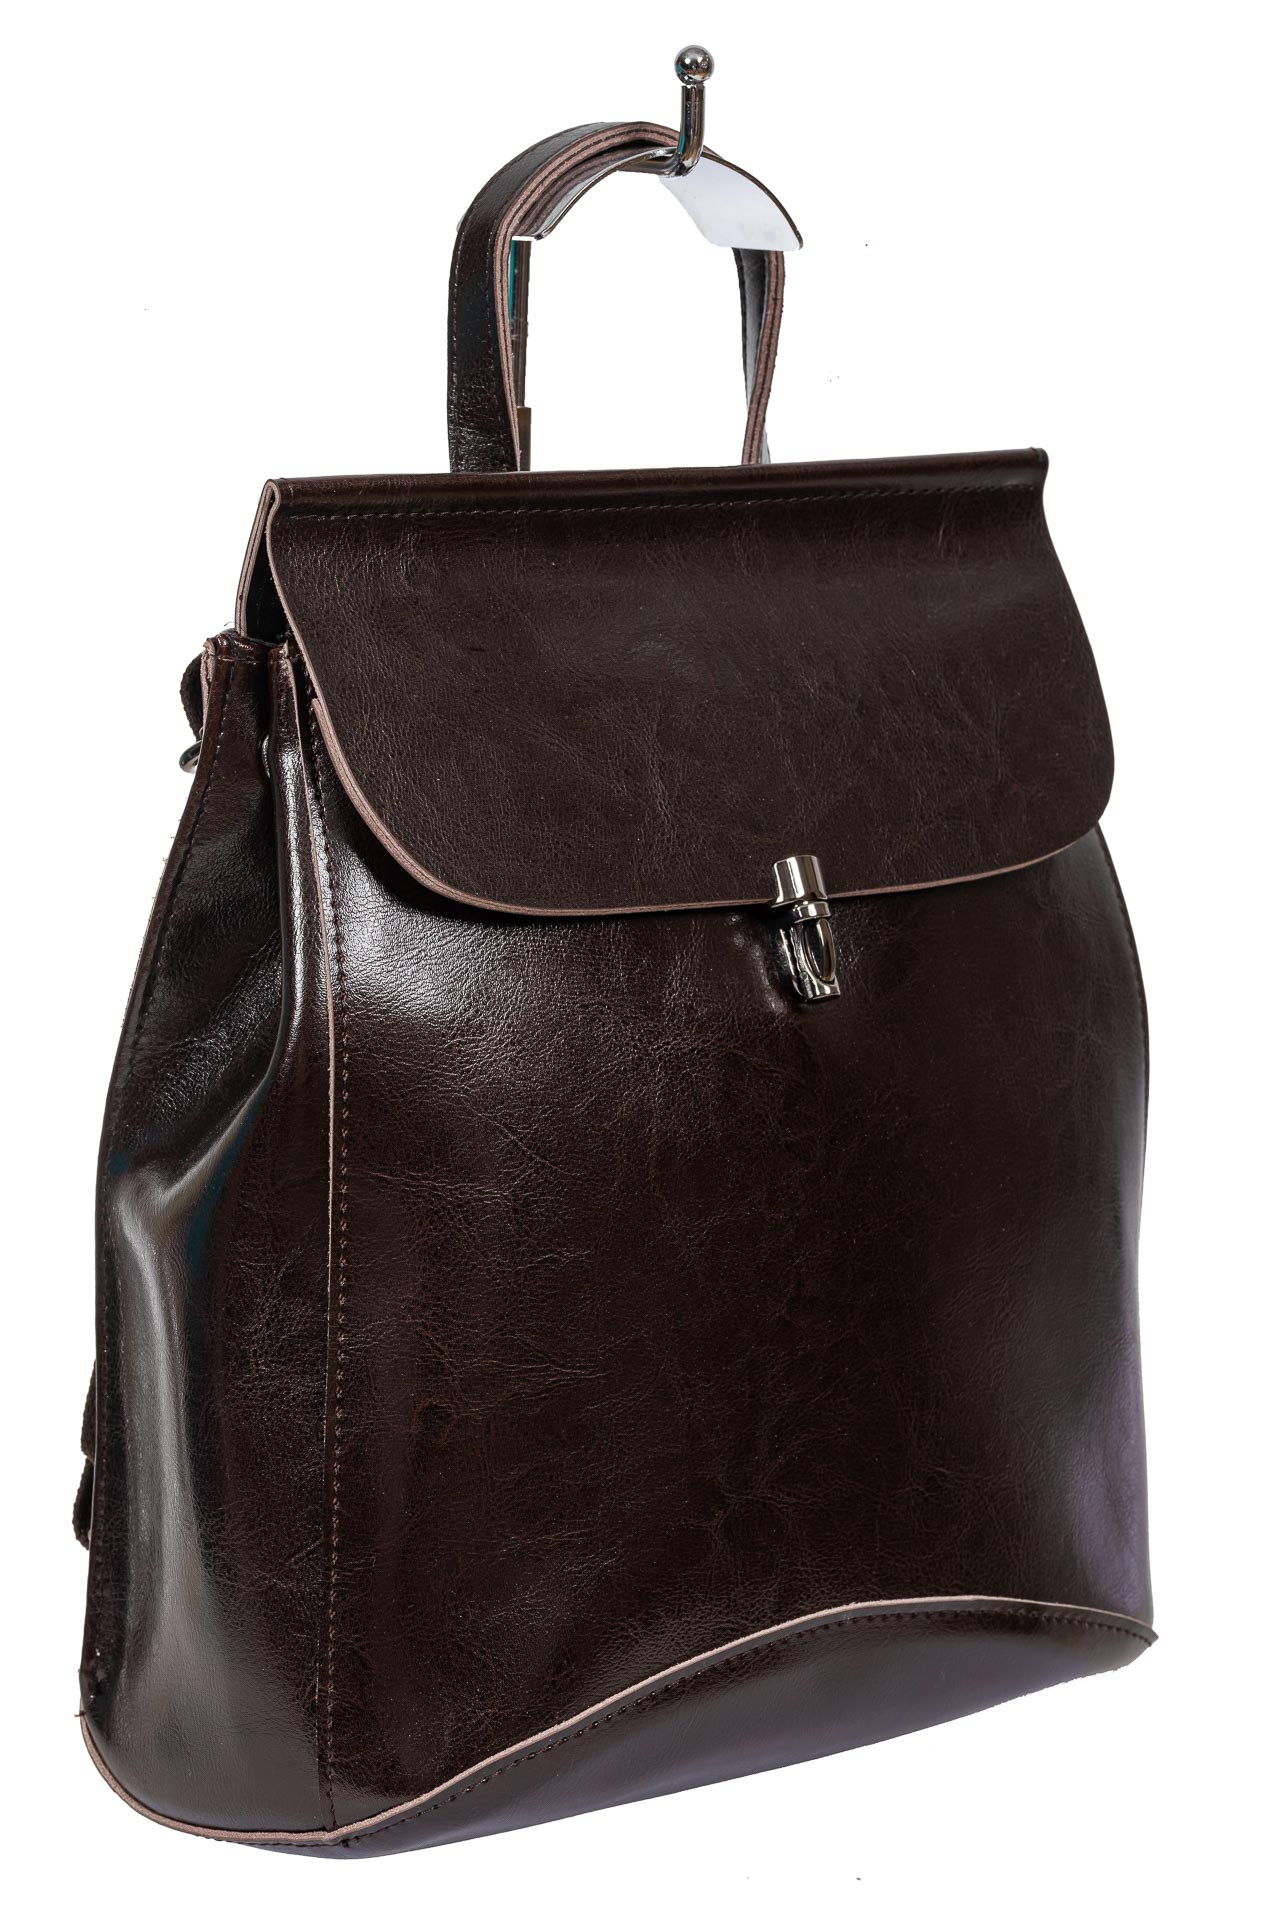 Женская сумка-рюкзак из натуральной кожи, цвет шоколад